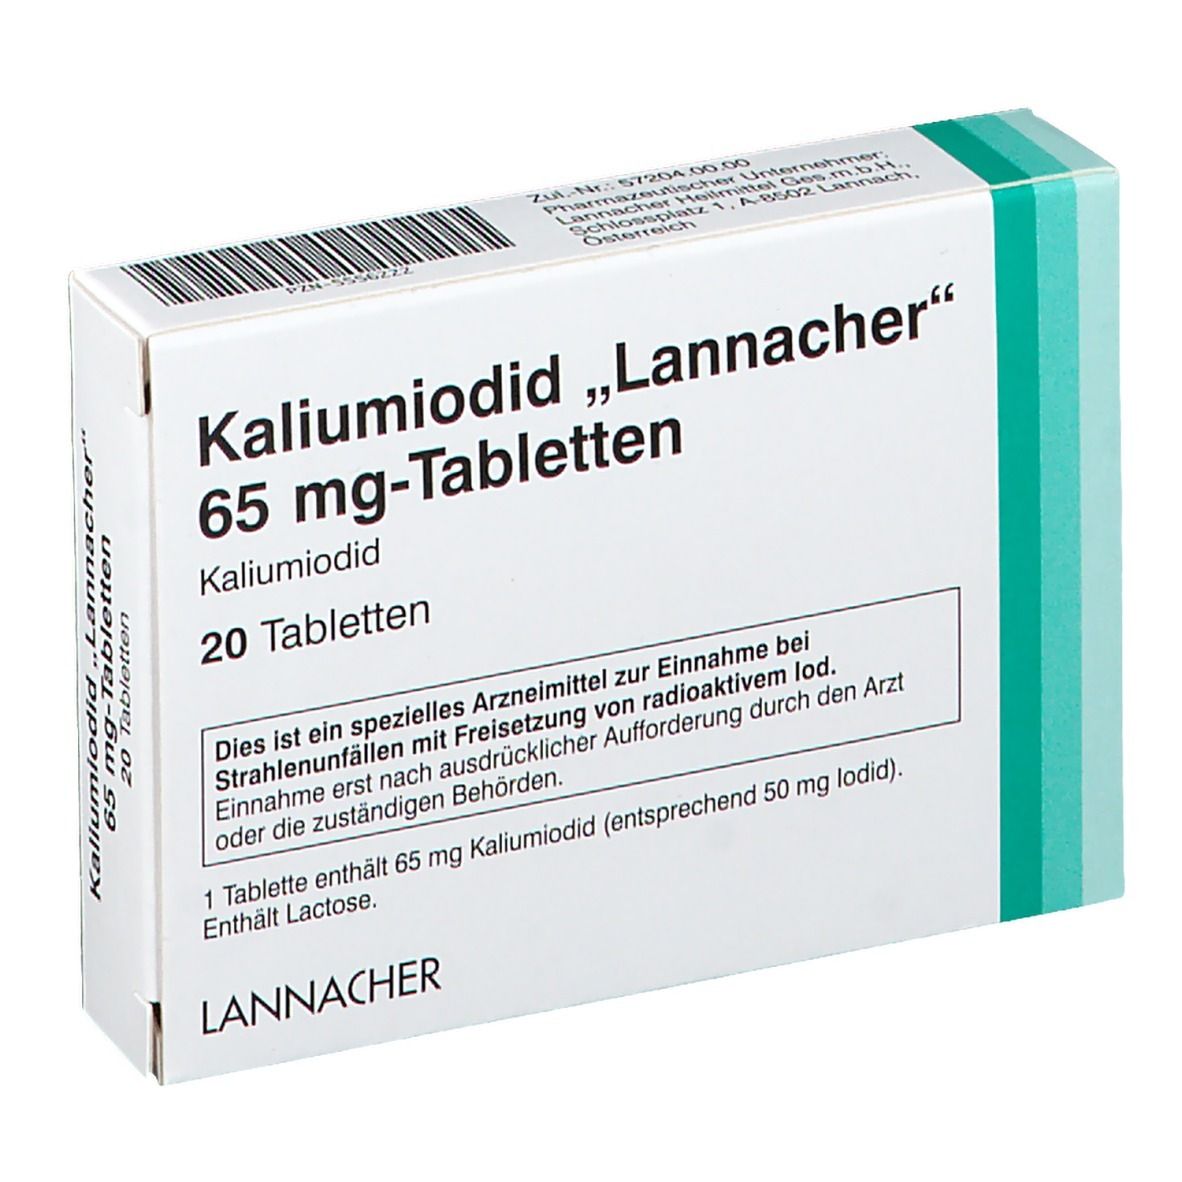 Kaliumiodid Lannacher 65 mg